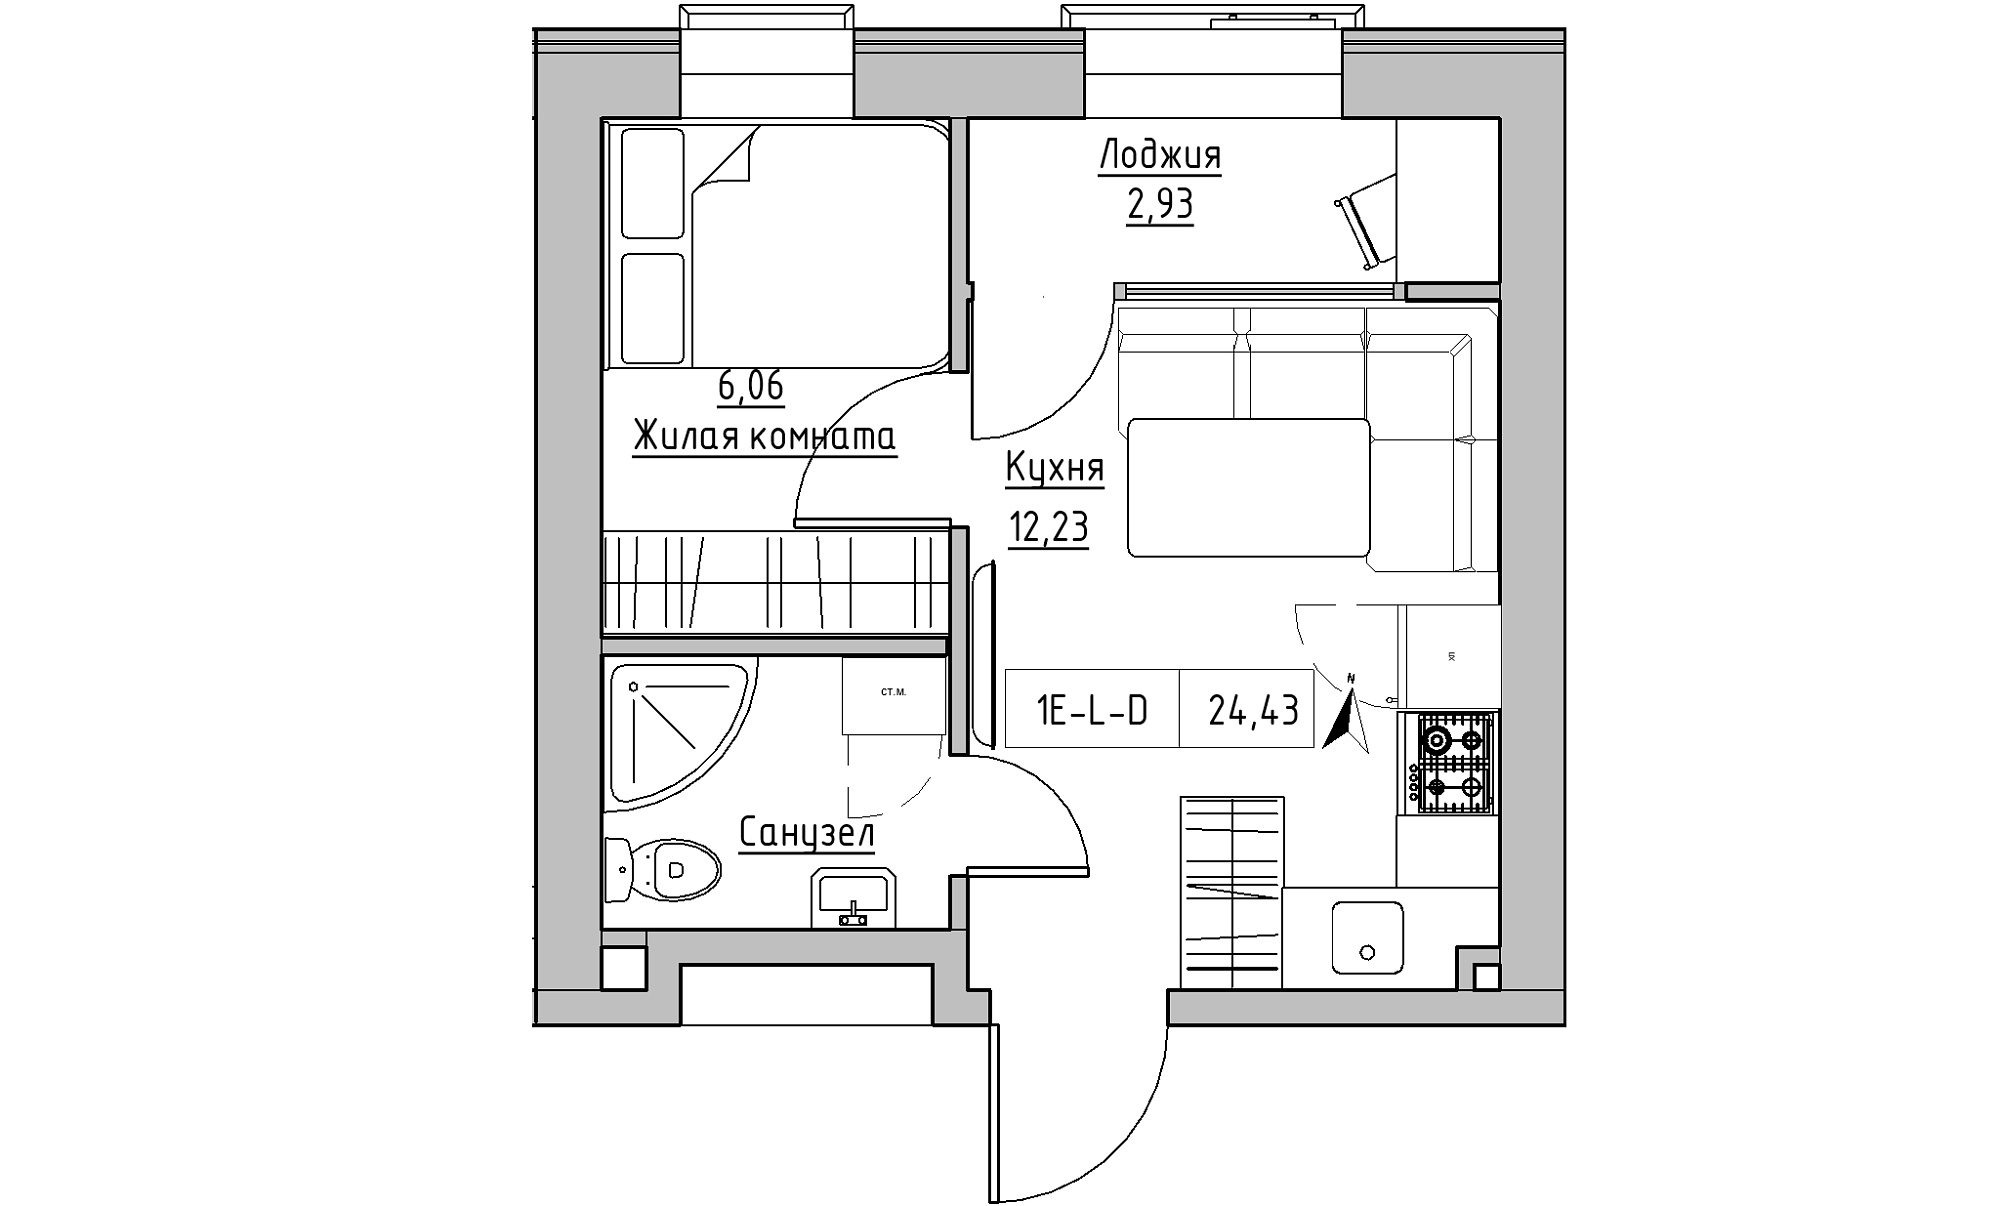 Планування 1-к квартира площею 24.43м2, KS-023-01/0016.